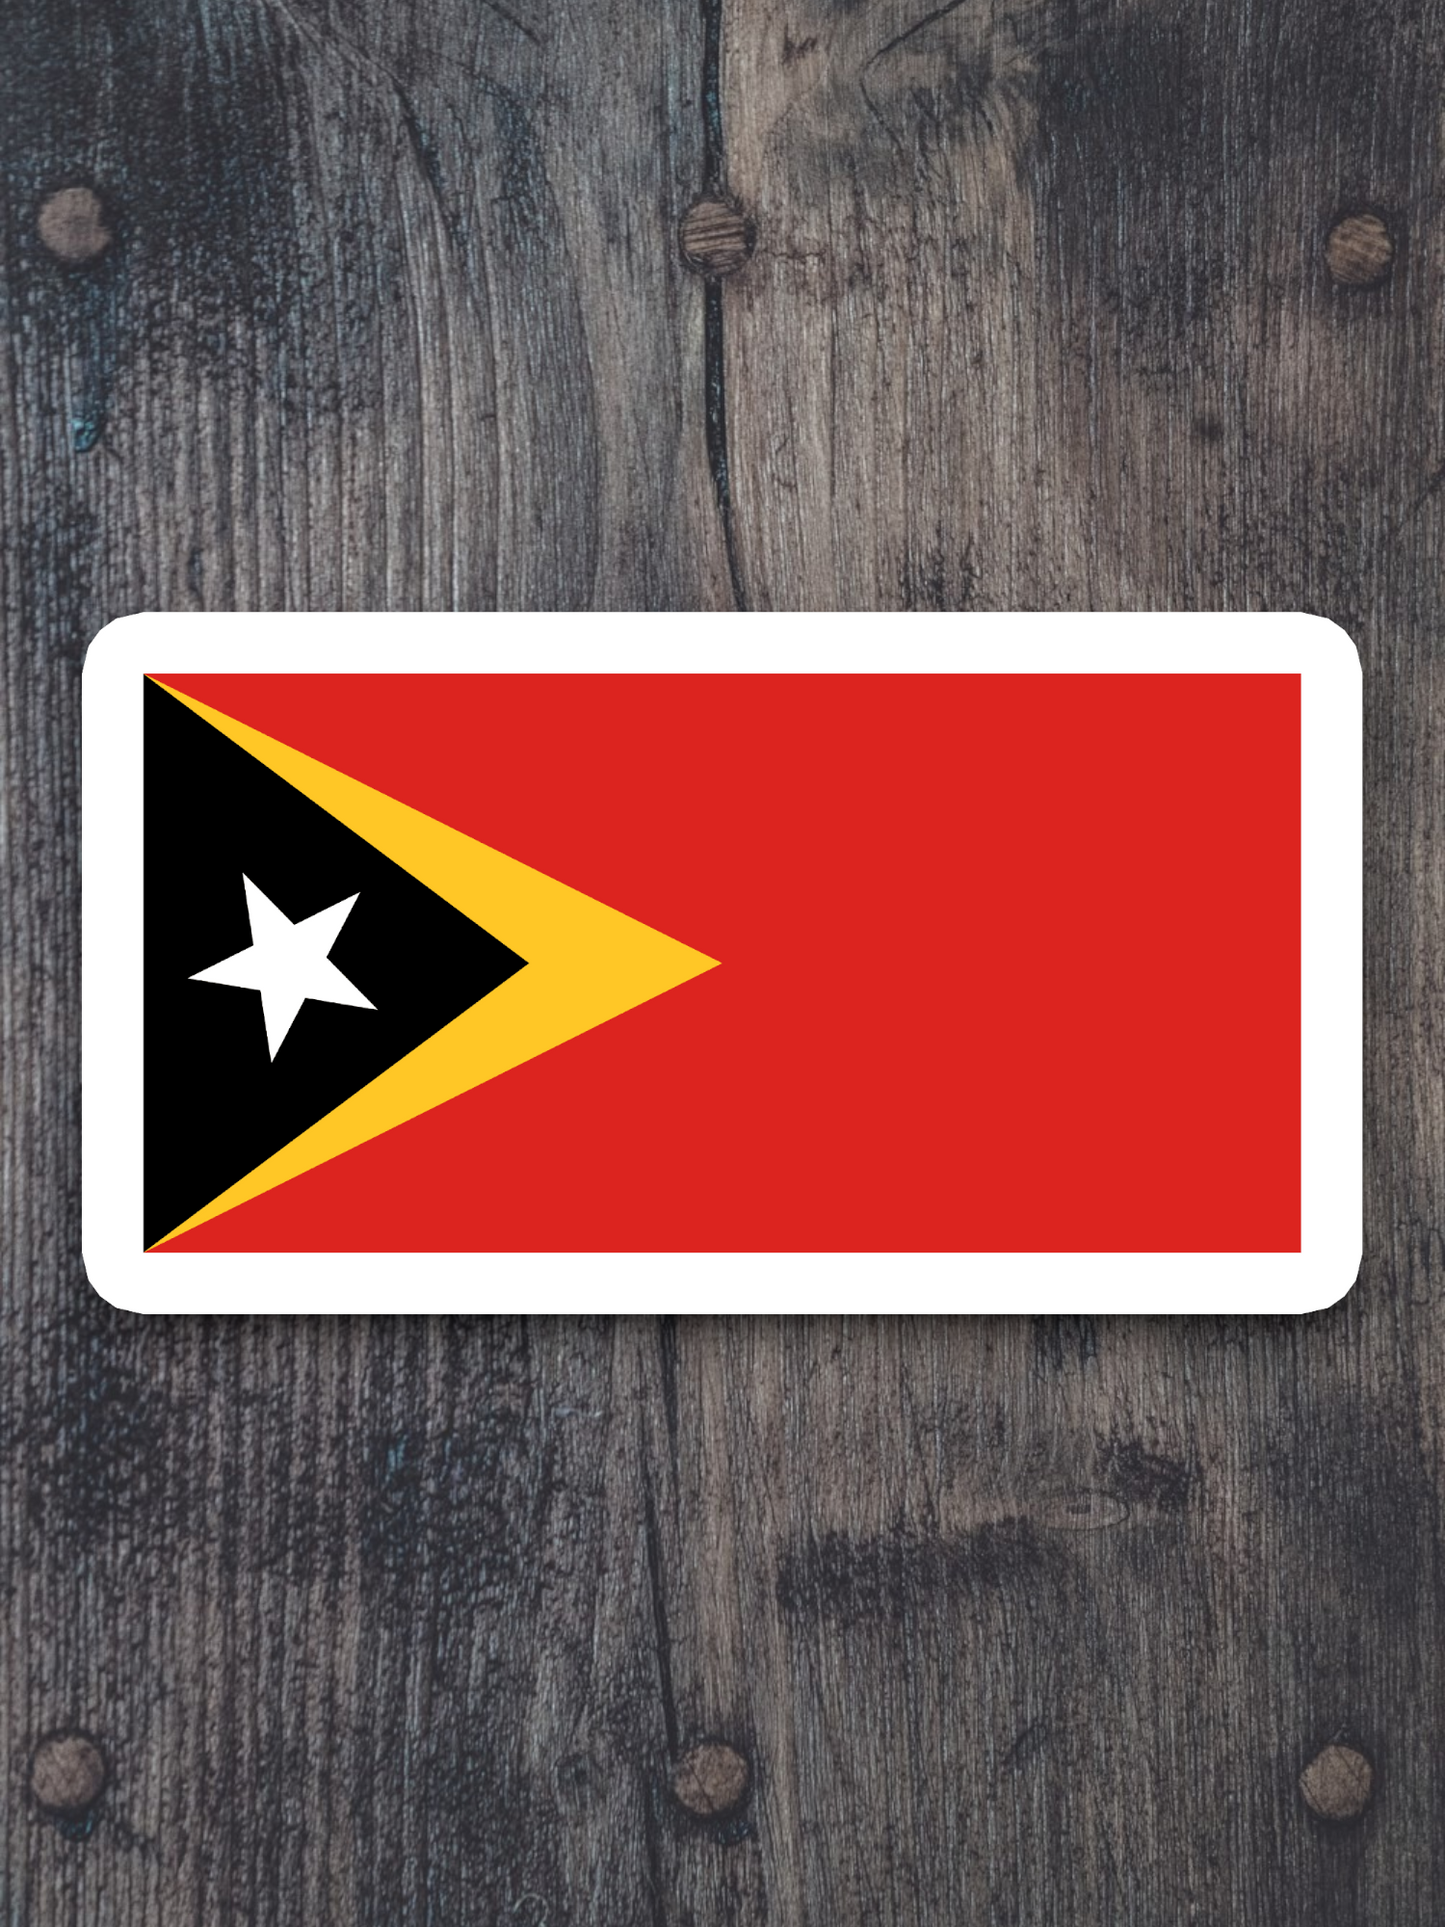 Timor-Leste Flag - International Country Flag Sticker